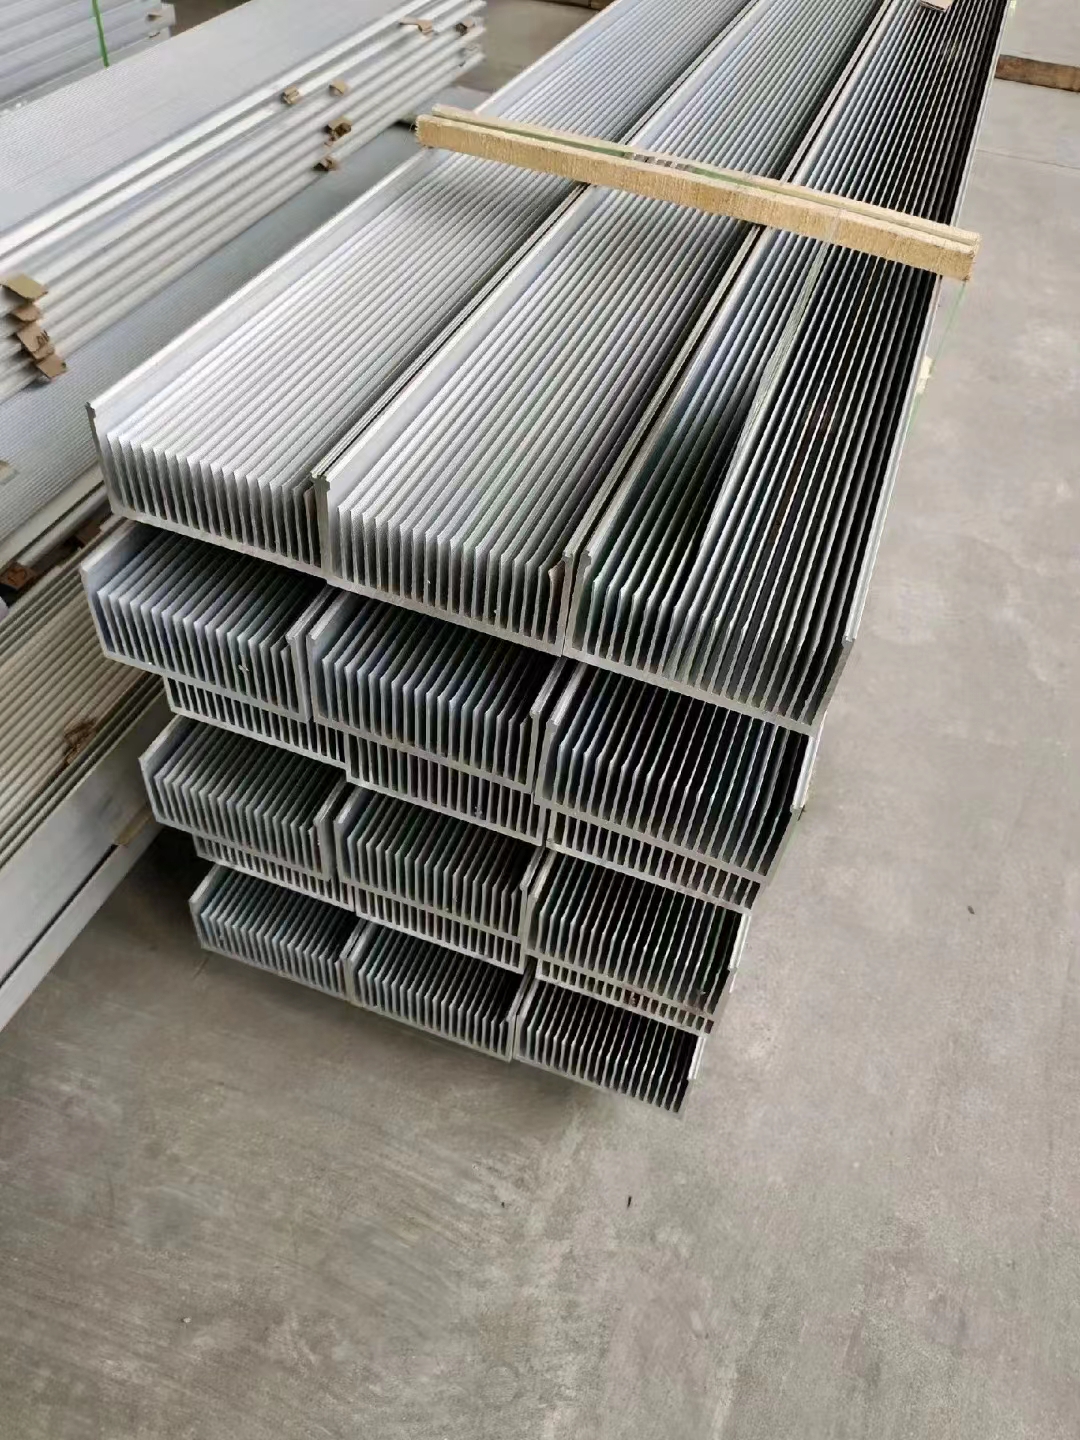 厂家供应散热器铝型材、散热器铝型材定制价格、广东散热器铝型材加工厂哪家好